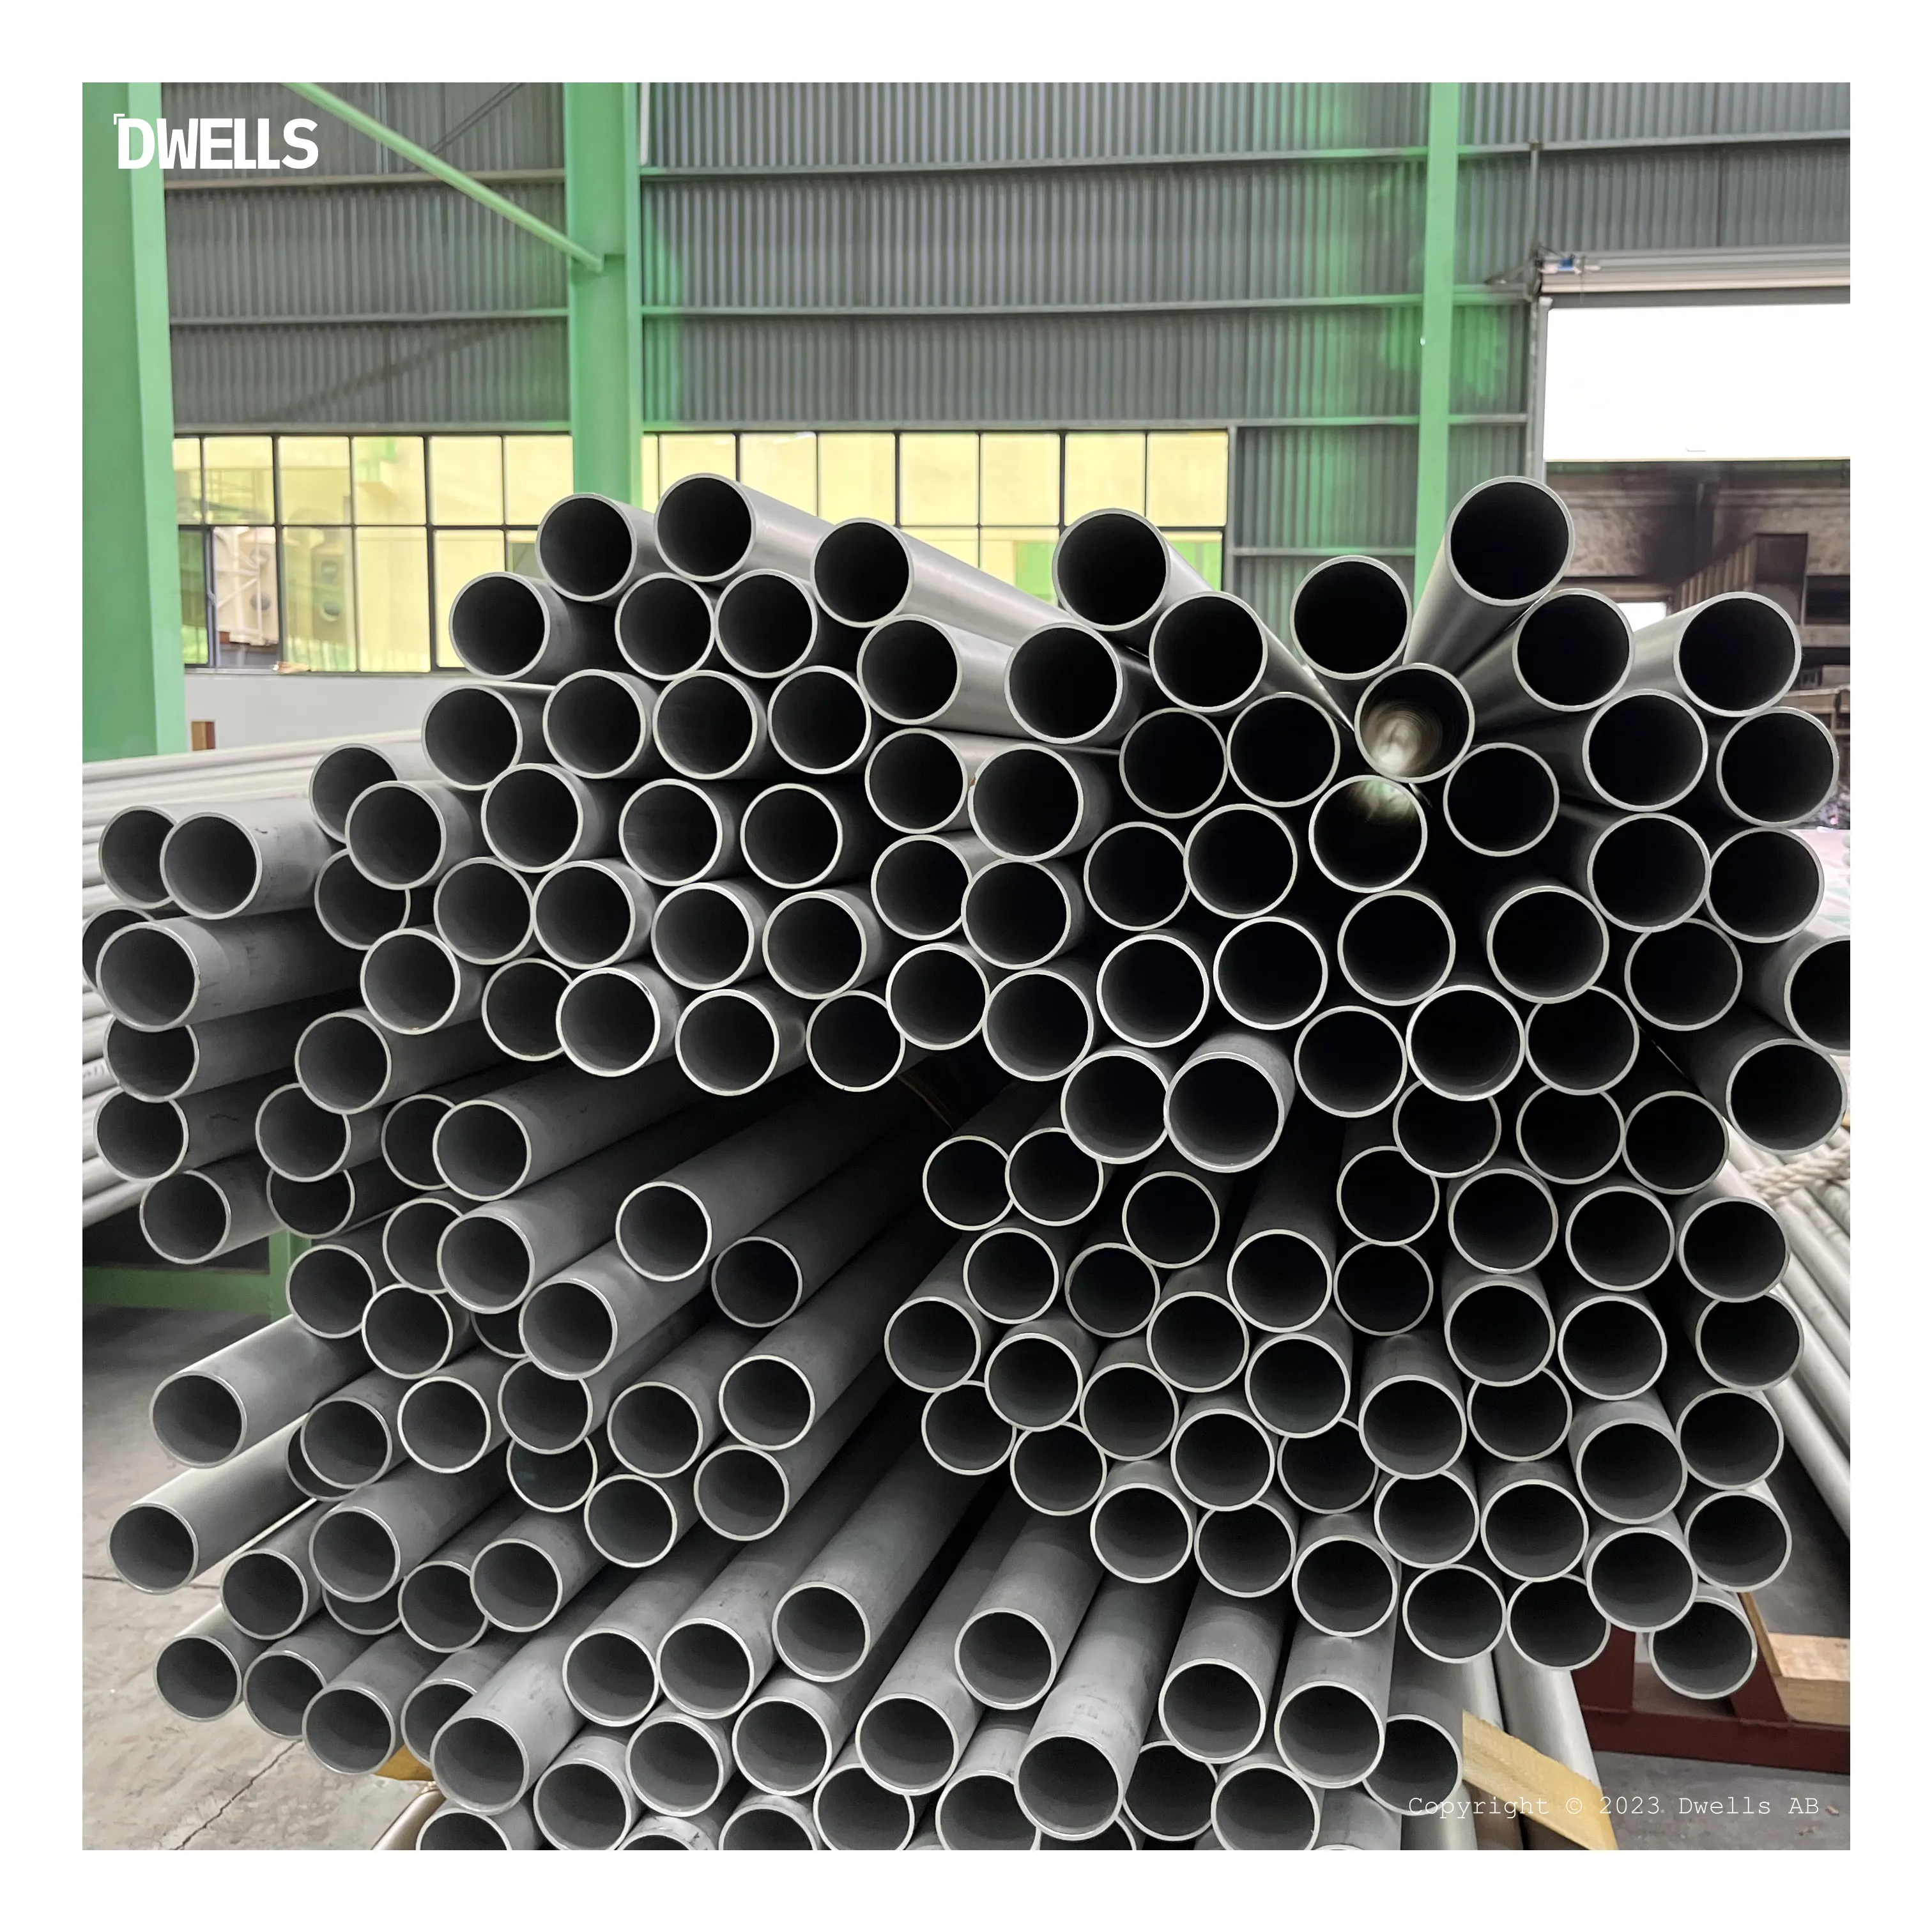 Tubos de acero inoxidable sin costura ASTM 304 de alta calidad y precio competitivo para altas temperaturas